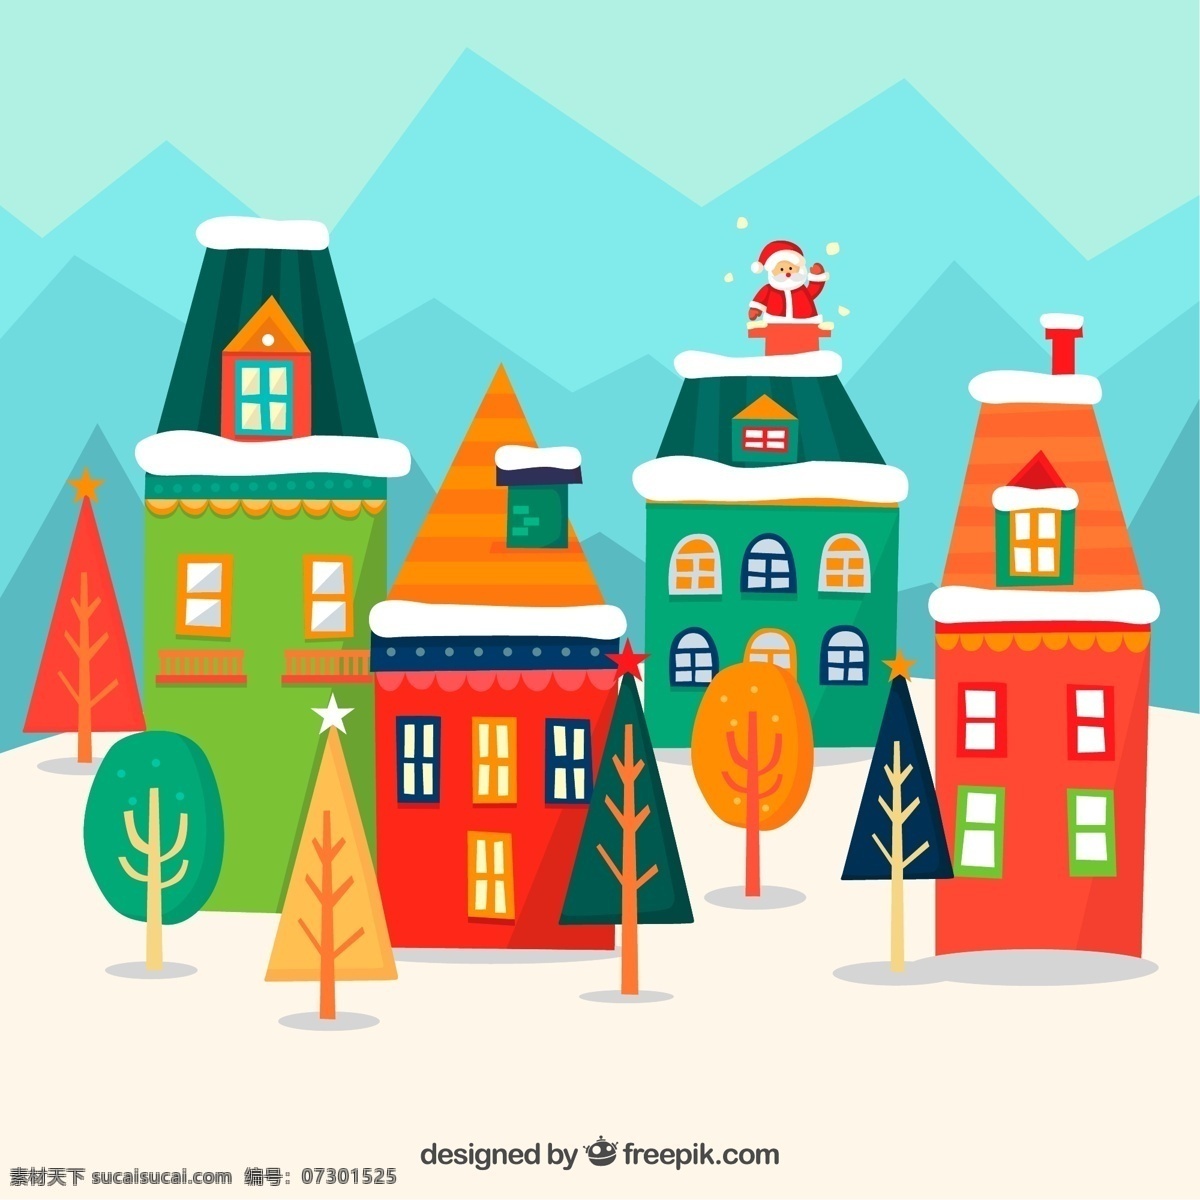 可爱 钻 烟囱 圣诞老人 山 圣诞节 楼 雪花 树木 房屋 动漫动画 风景漫画